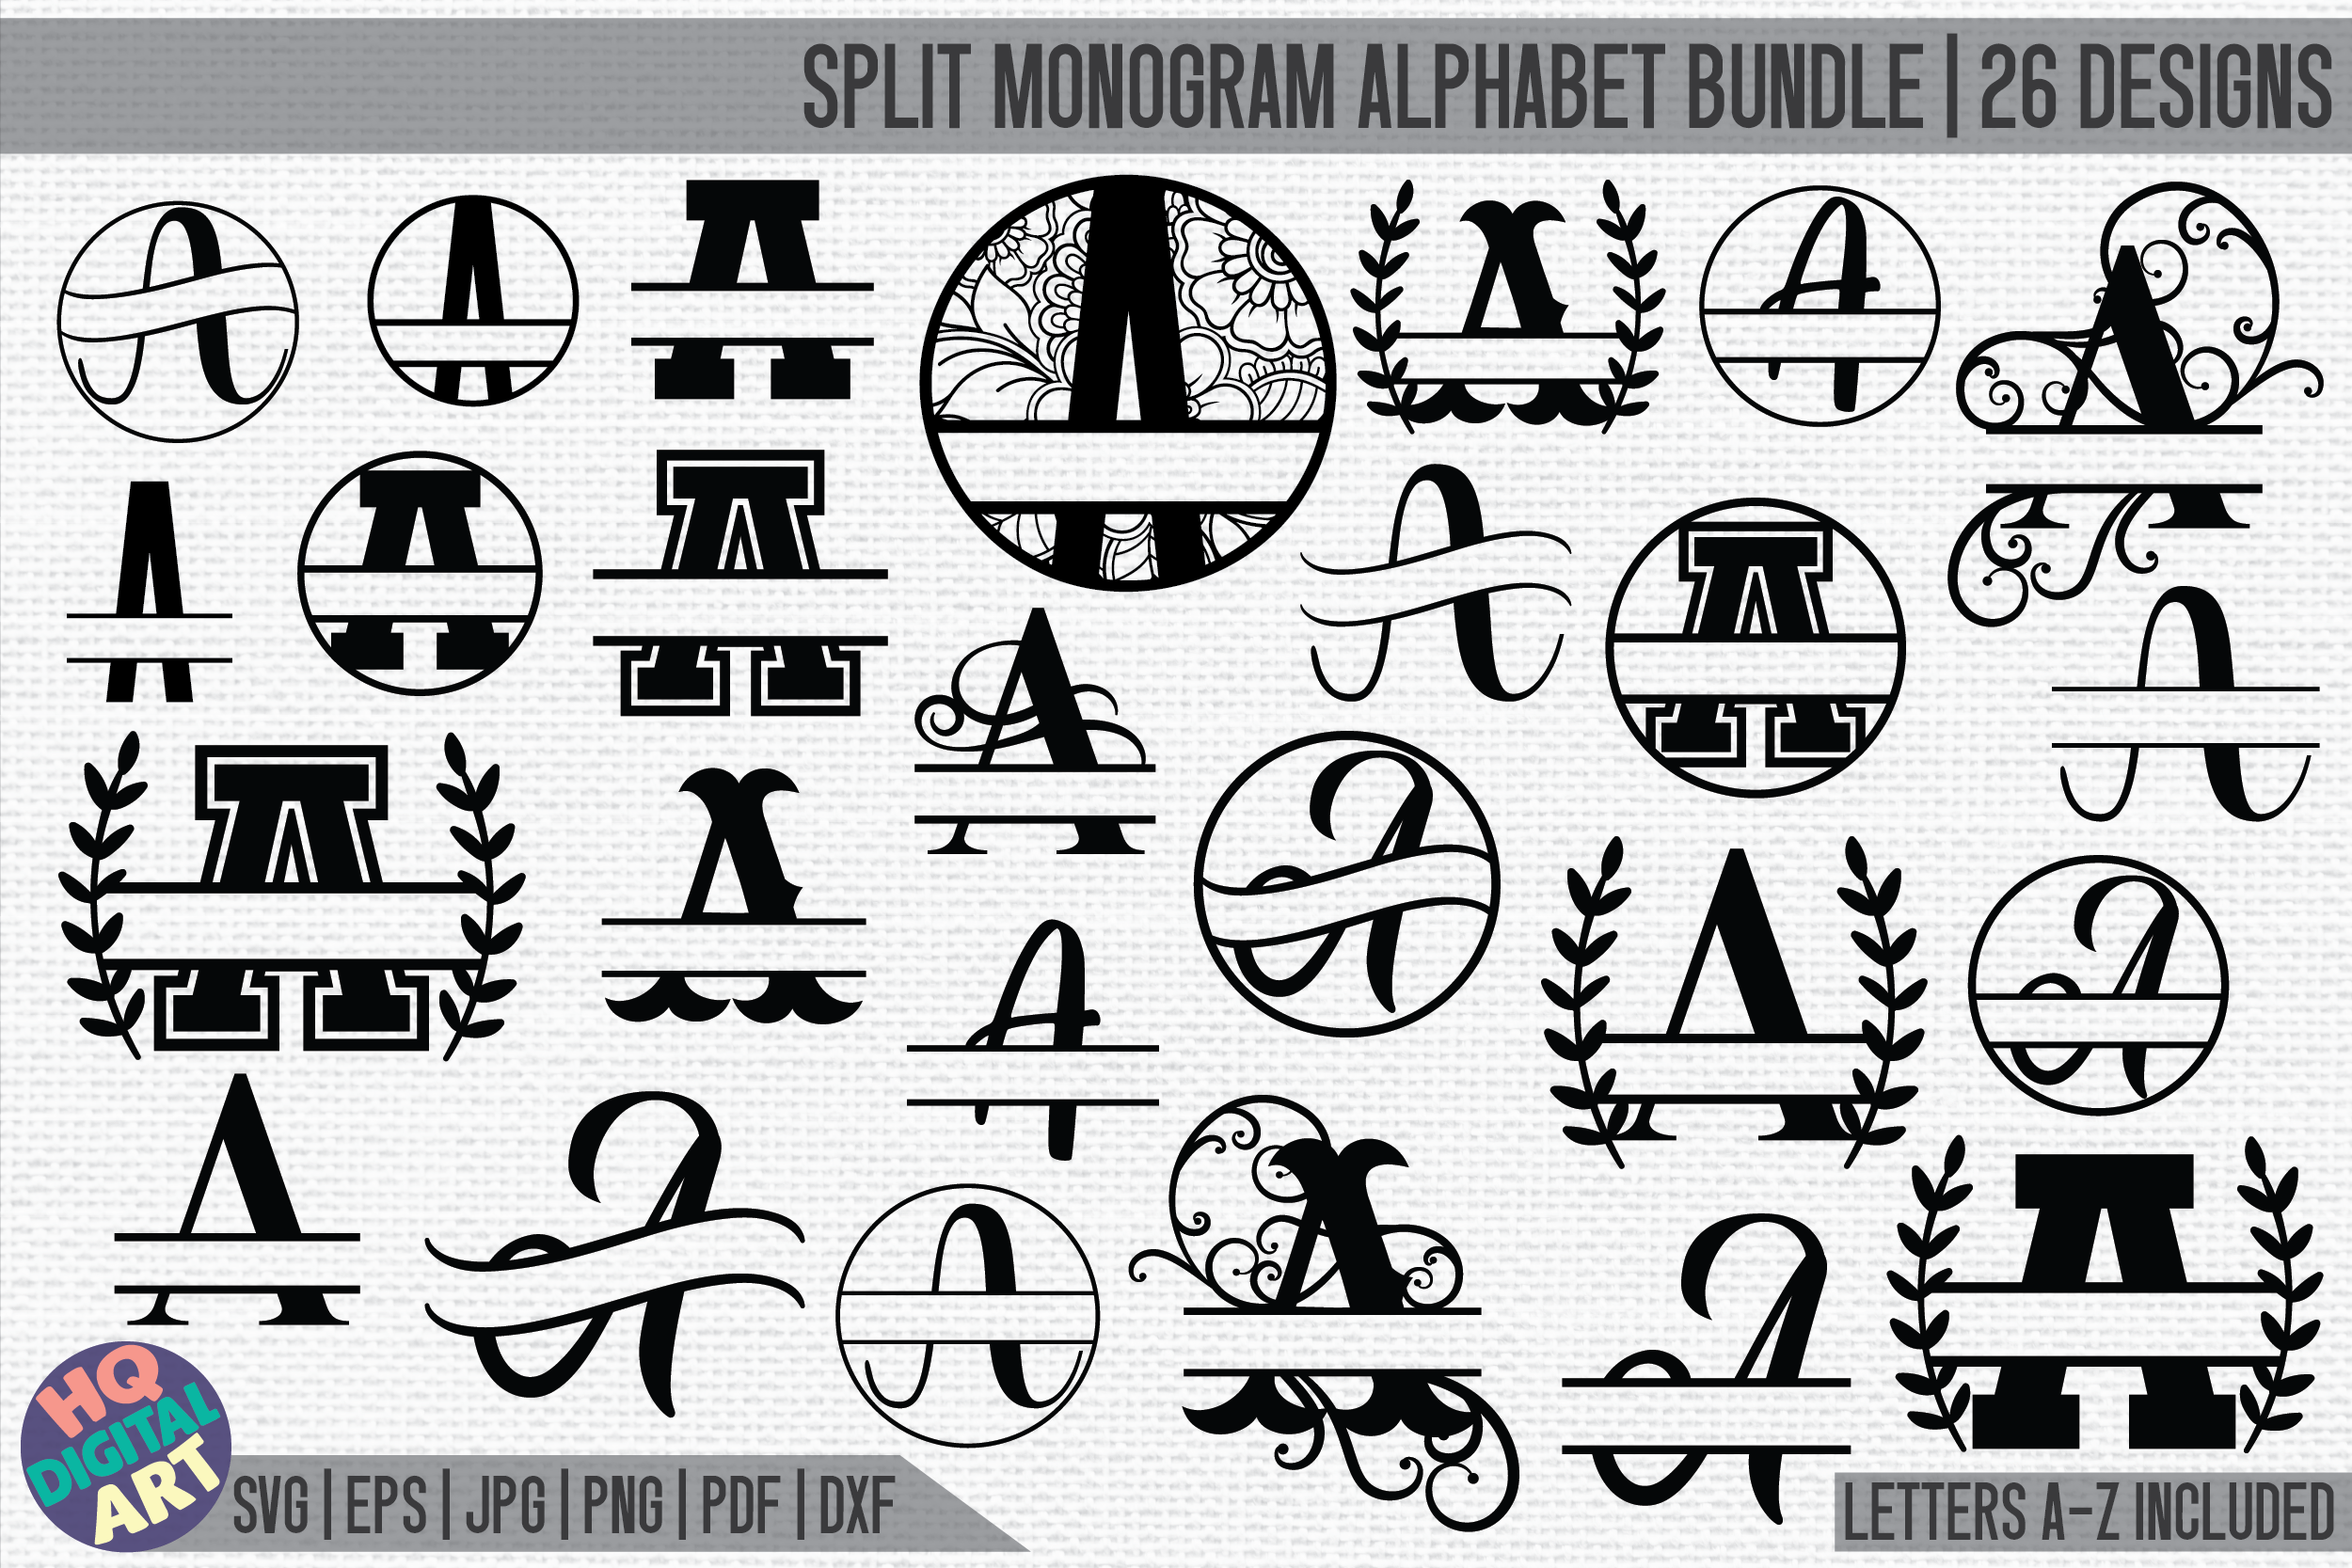 Download Huge Split Monogram Alphabet Bundle Svg 26 Split Letter Designs By Hqdigitalart Thehungryjpeg Com